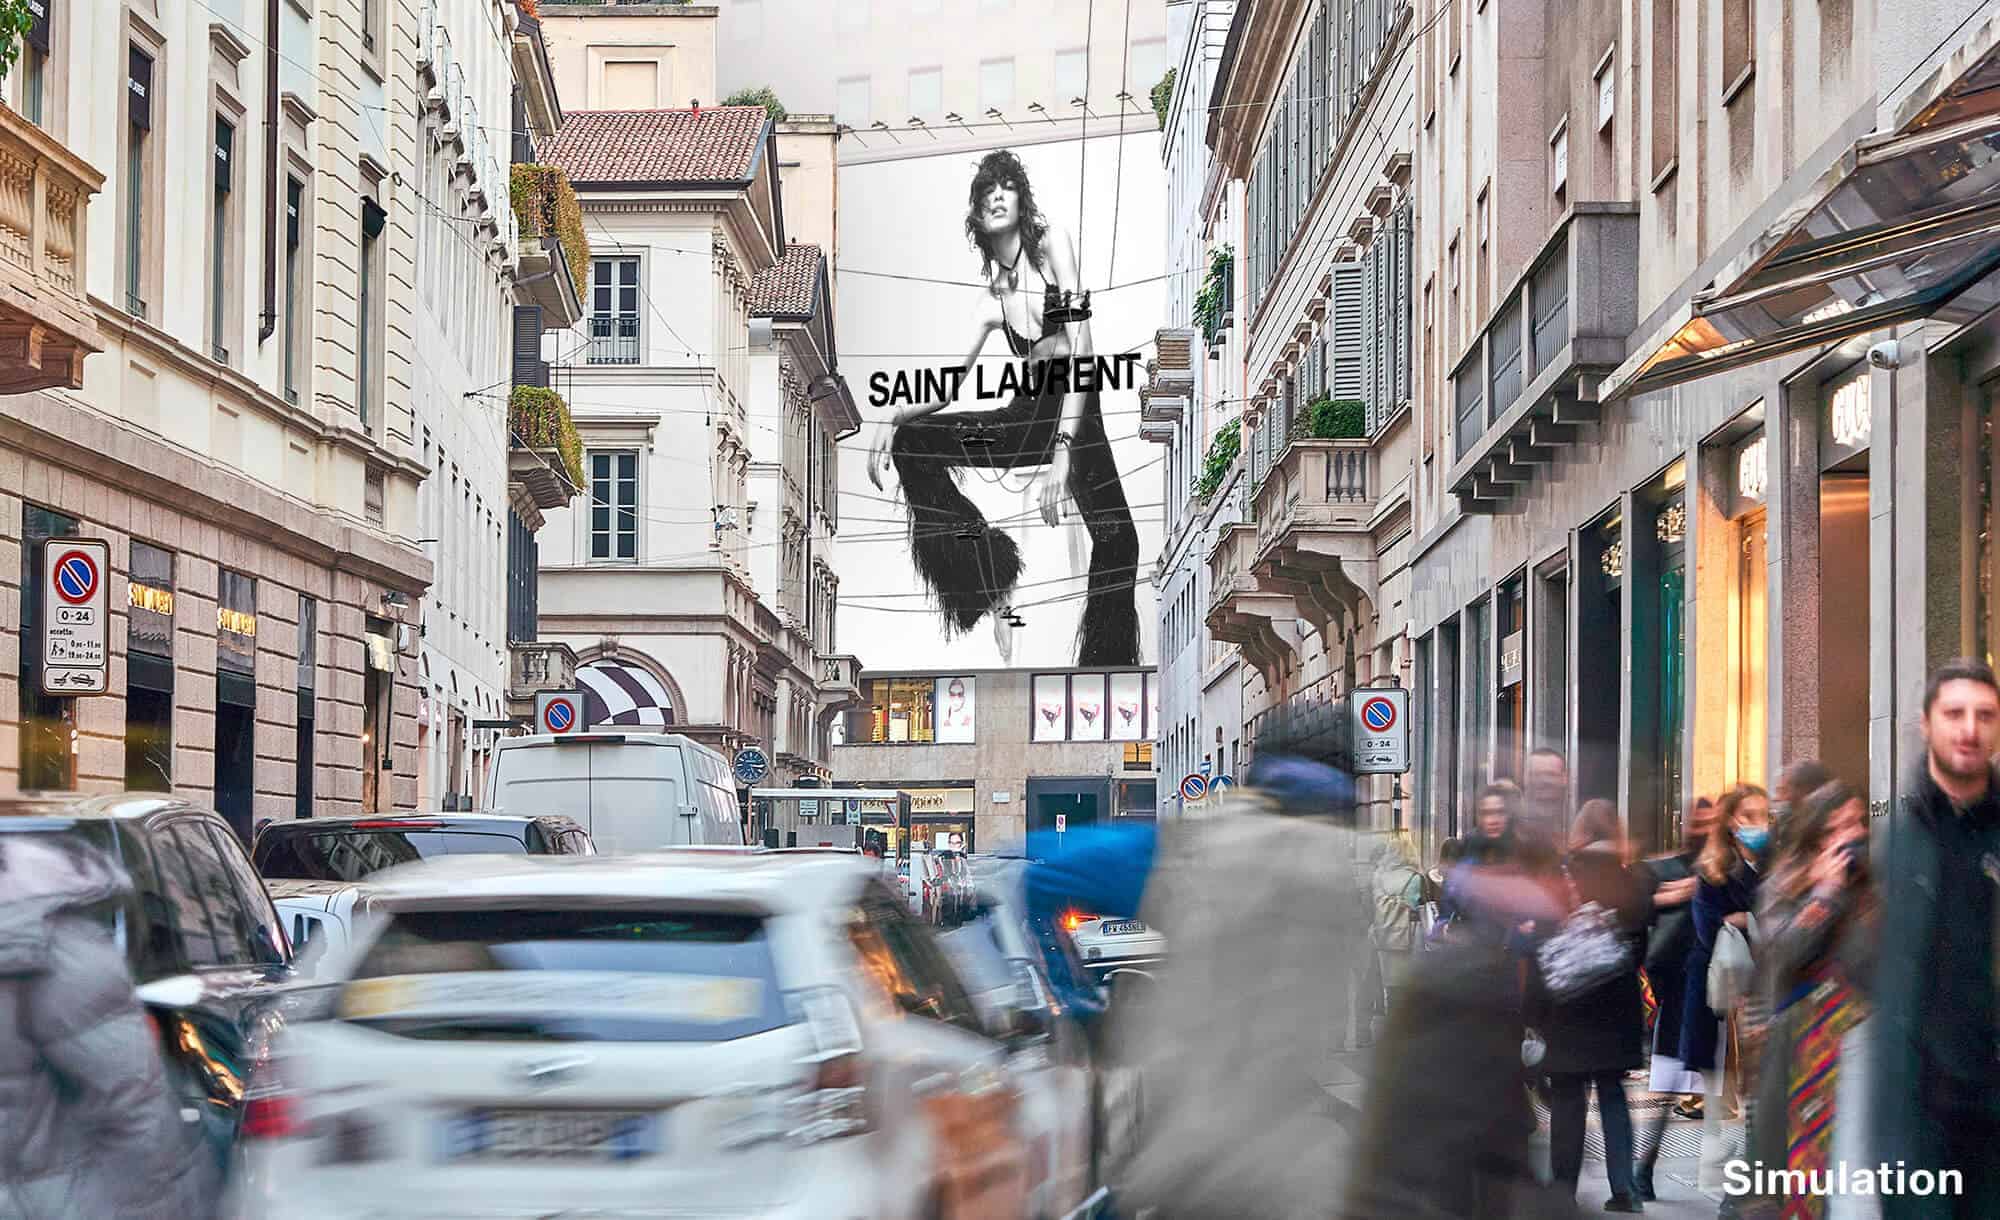 Maxi Affissione a Milano in Corso Matteotti 18/22 con Saint Laurent (fashion)